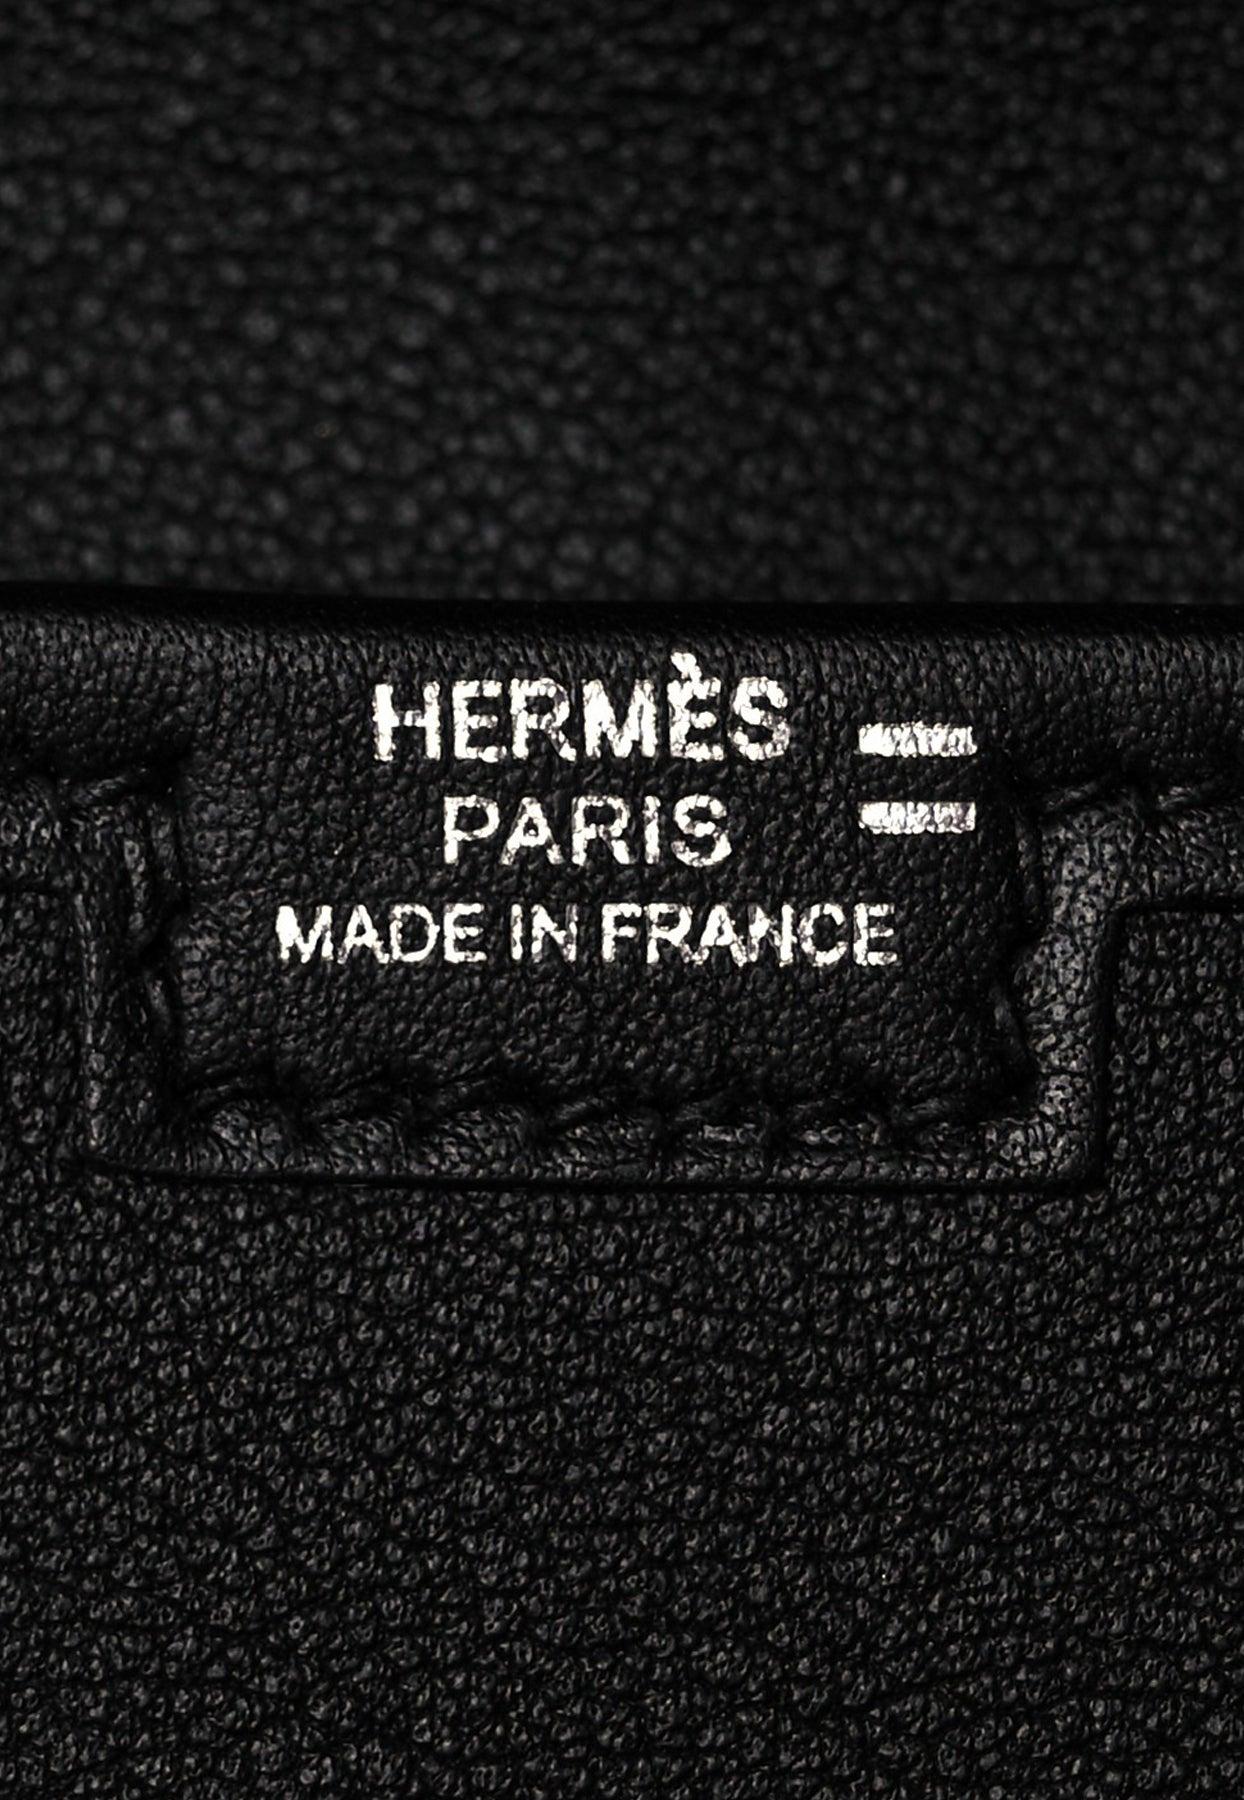 Hermès Jige Duo Touch Gold Swift Wallet